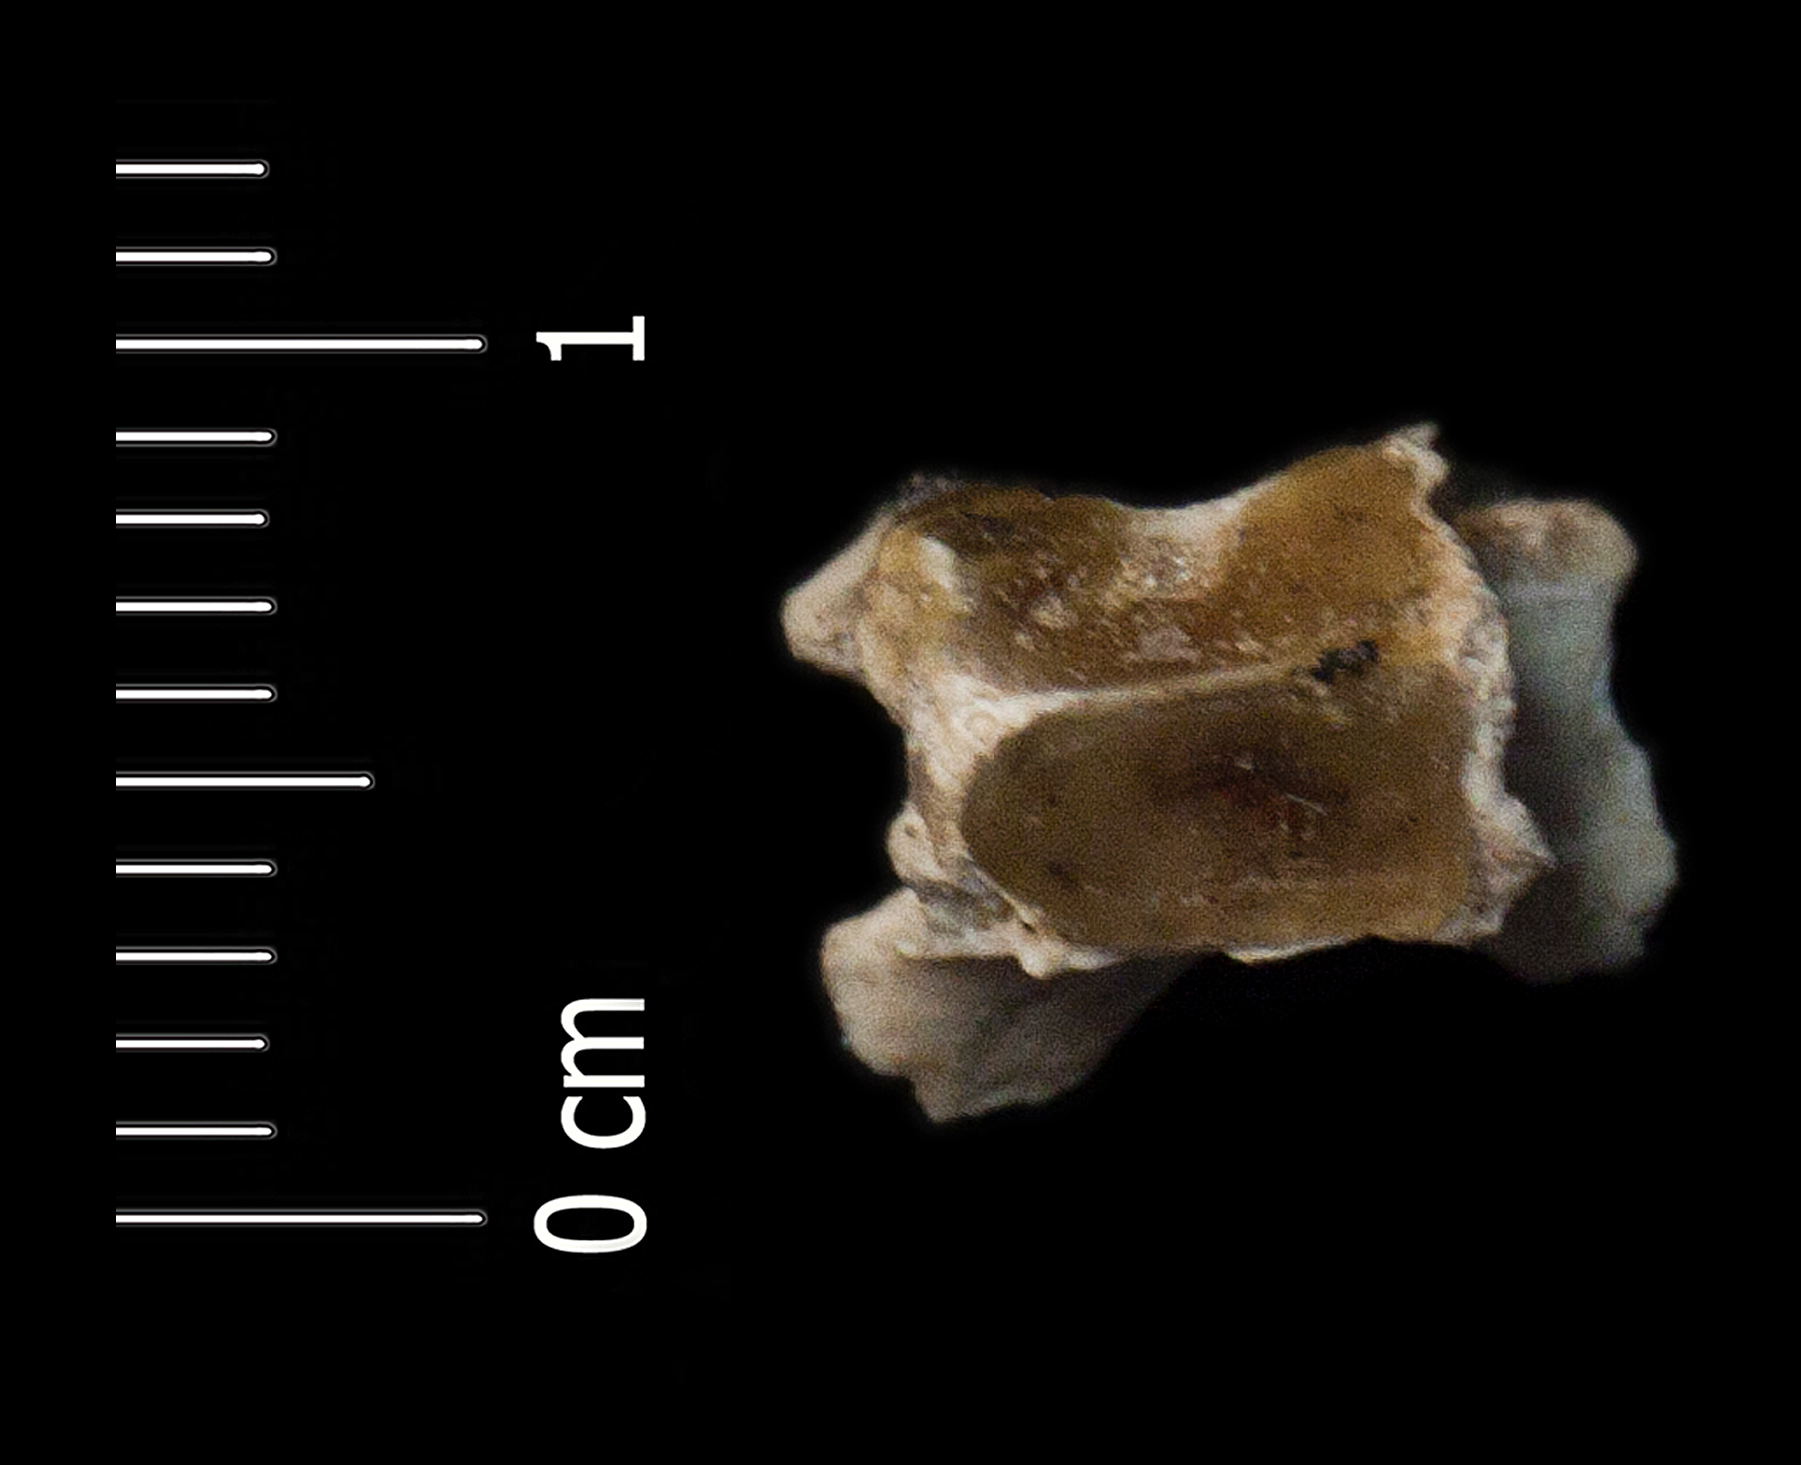 Fossile (vertebra, esemplare)